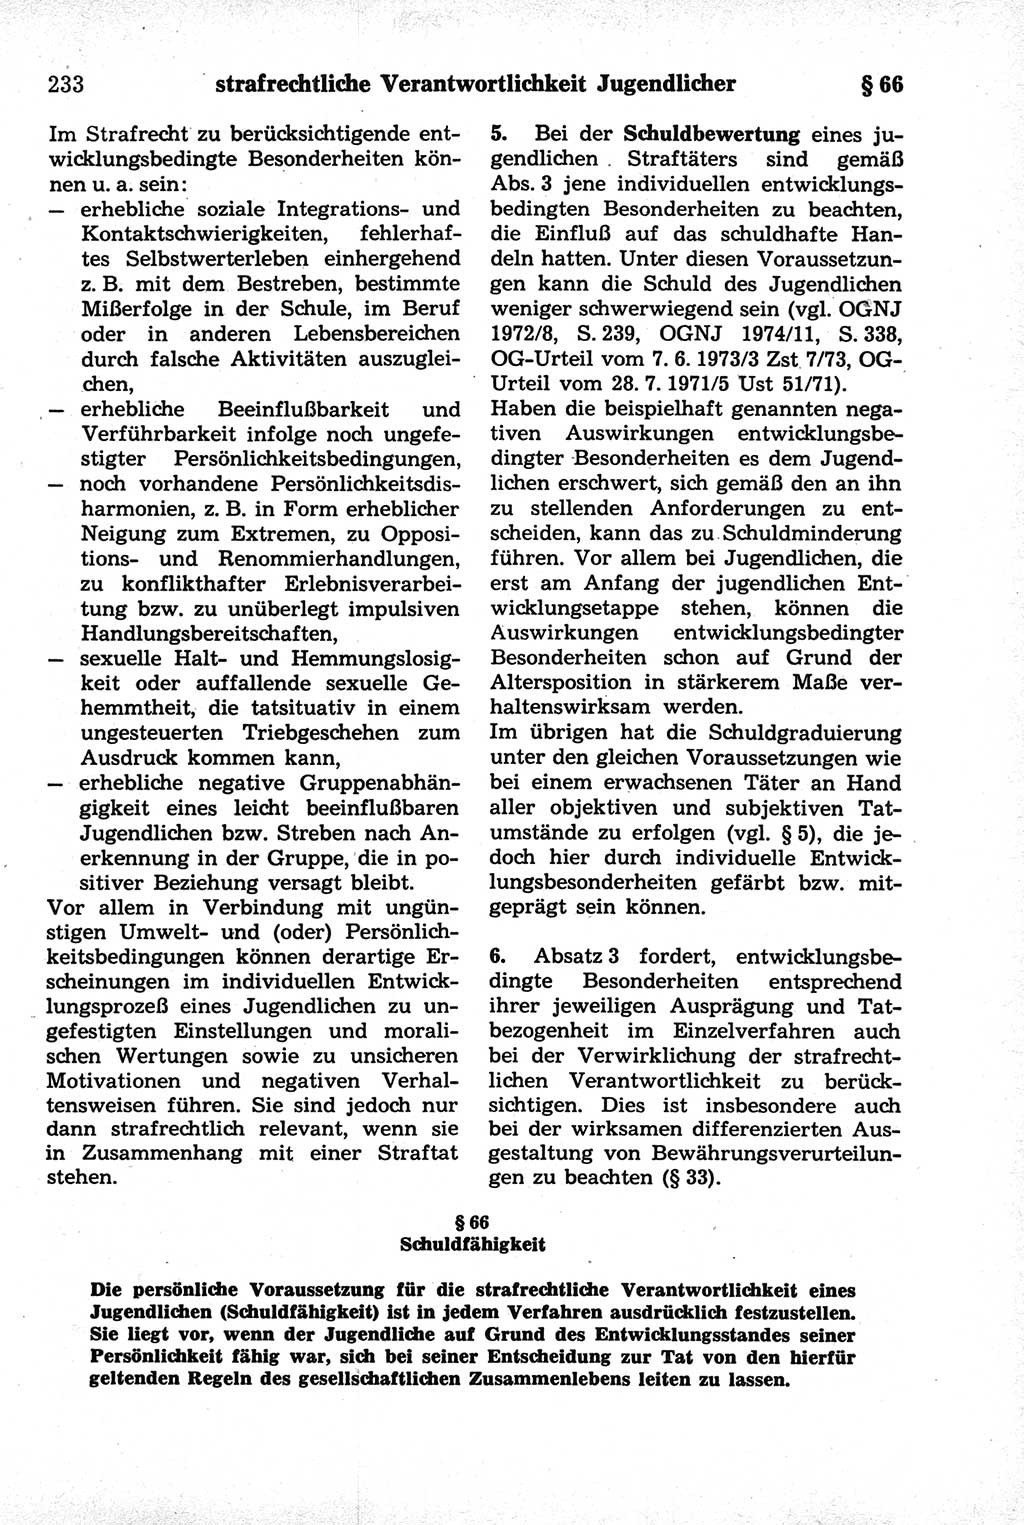 Strafrecht der Deutschen Demokratischen Republik (DDR), Kommentar zum Strafgesetzbuch (StGB) 1981, Seite 233 (Strafr. DDR Komm. StGB 1981, S. 233)